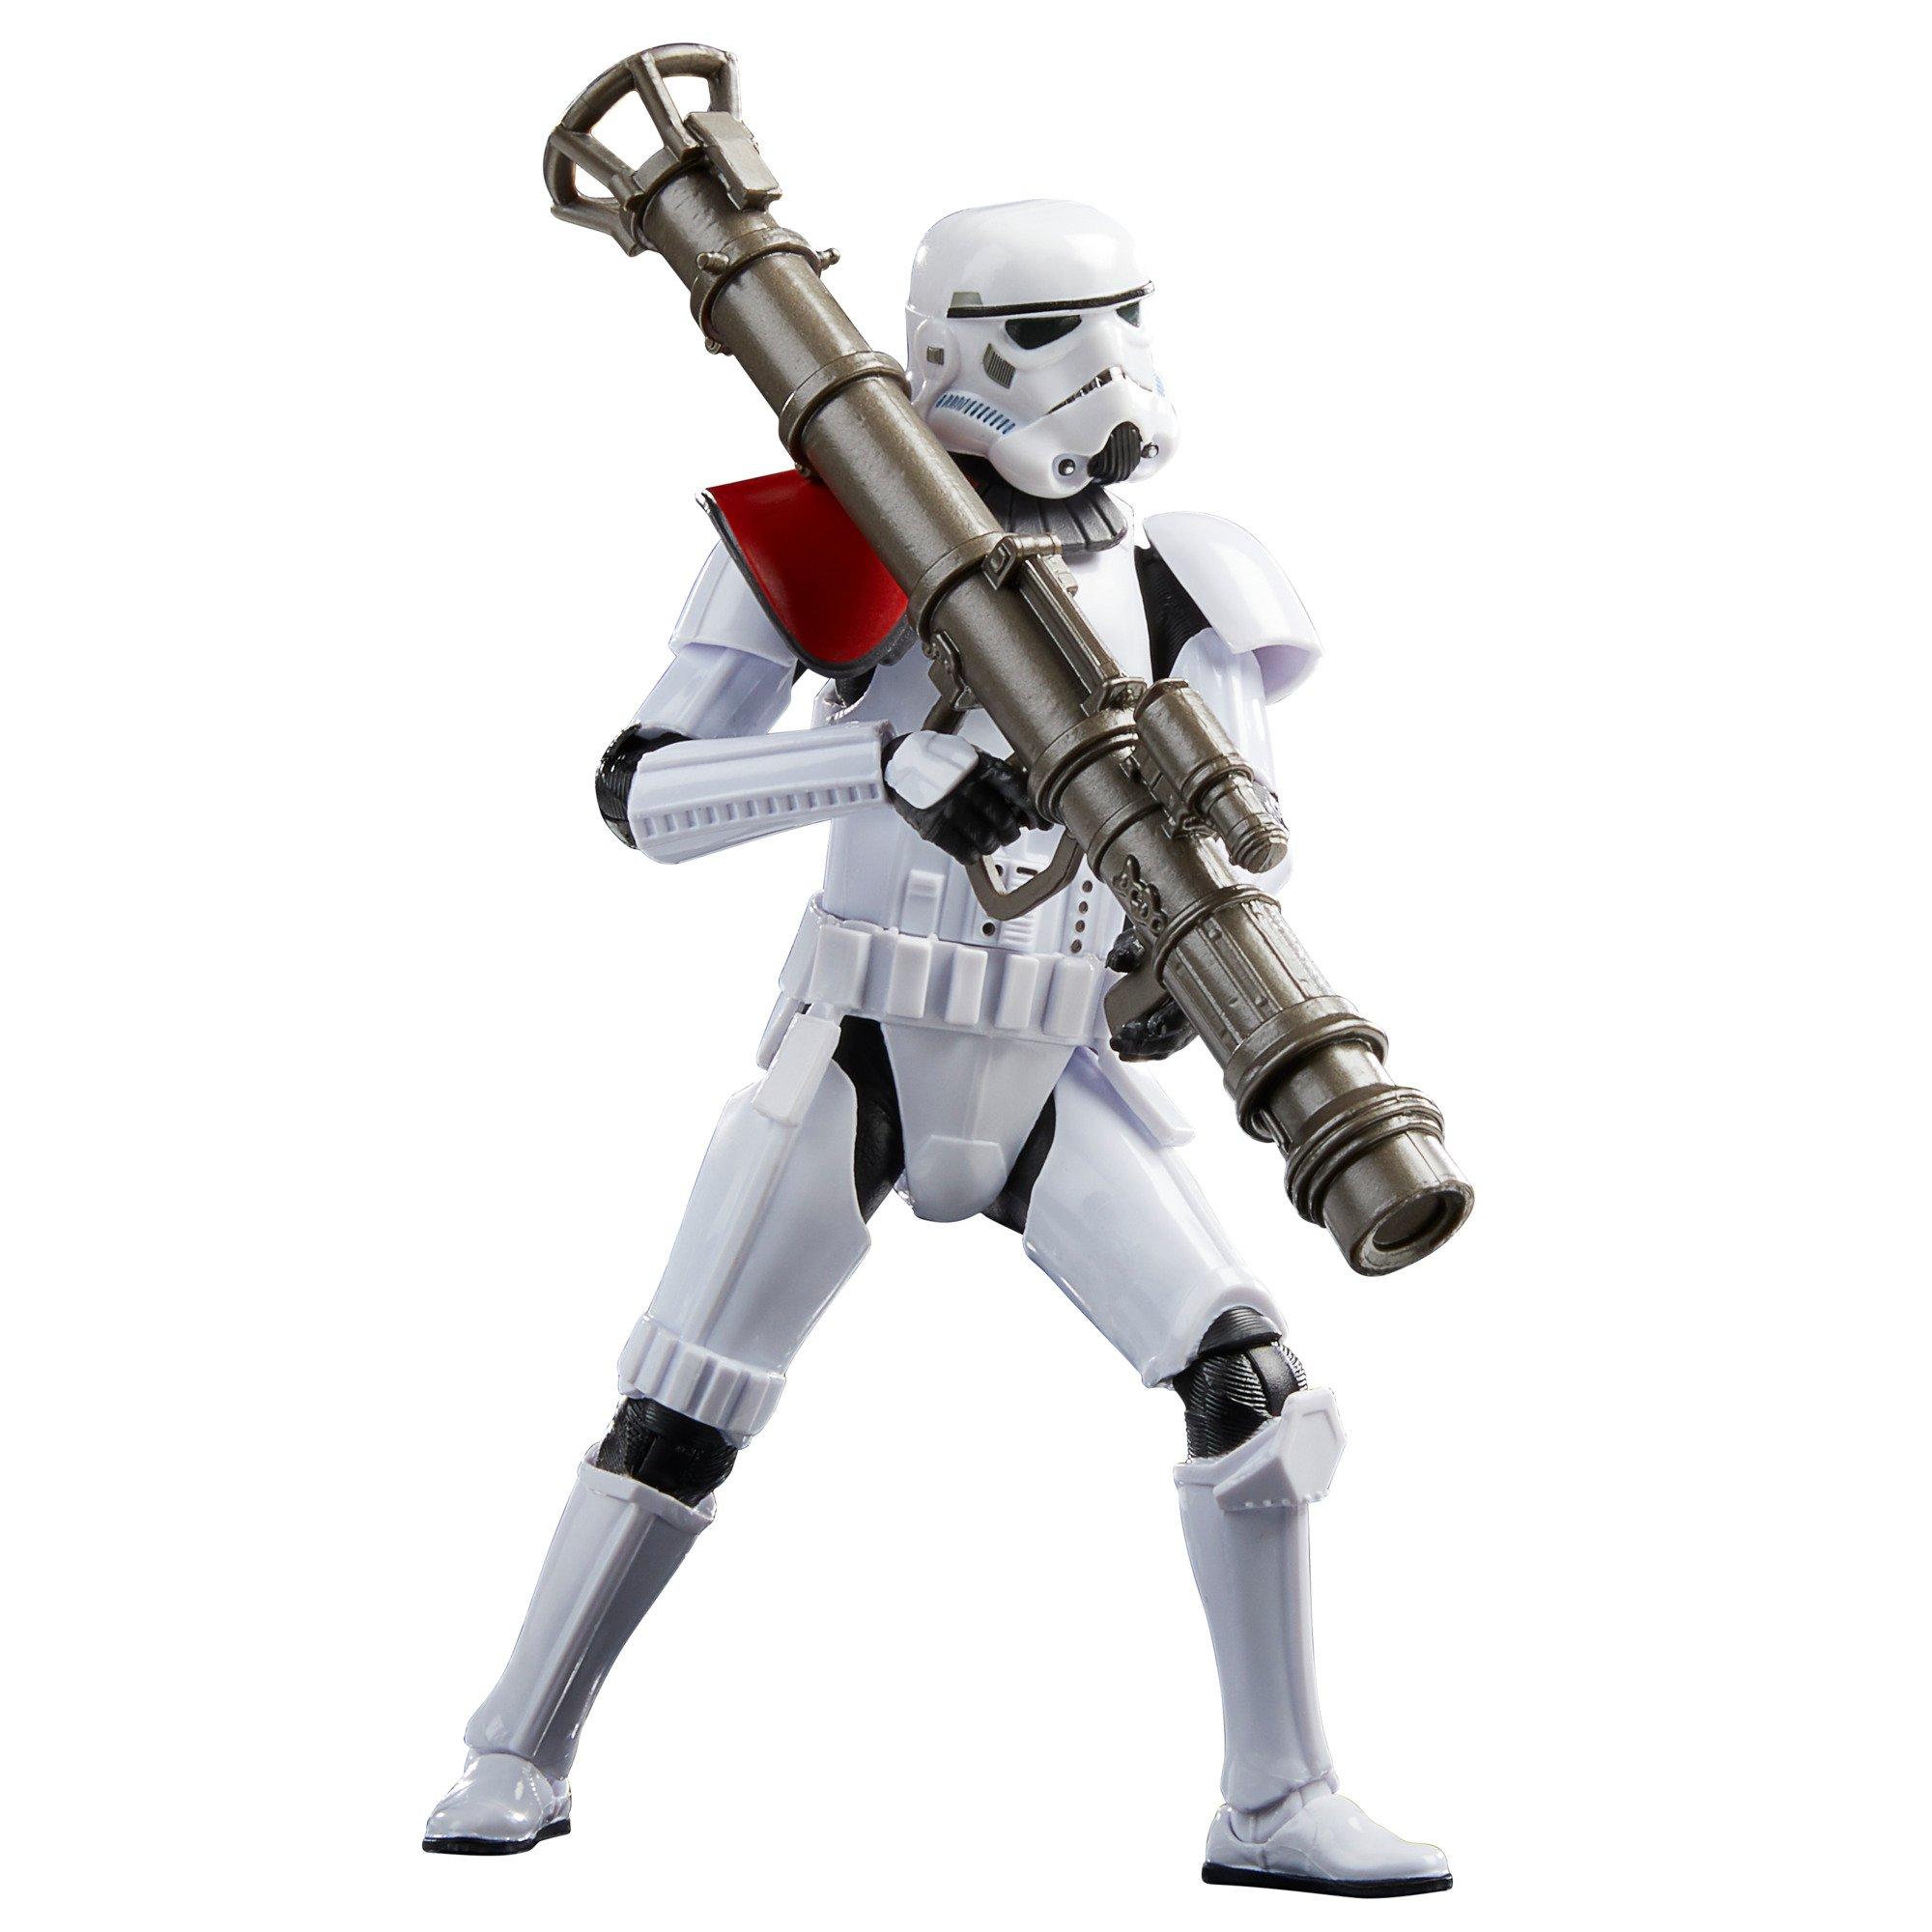 Hasbro Star Wars The Black Series Star Wars Jedi: Fallen Order Launcher Trooper 6-in GameStop Exclusive GameStop